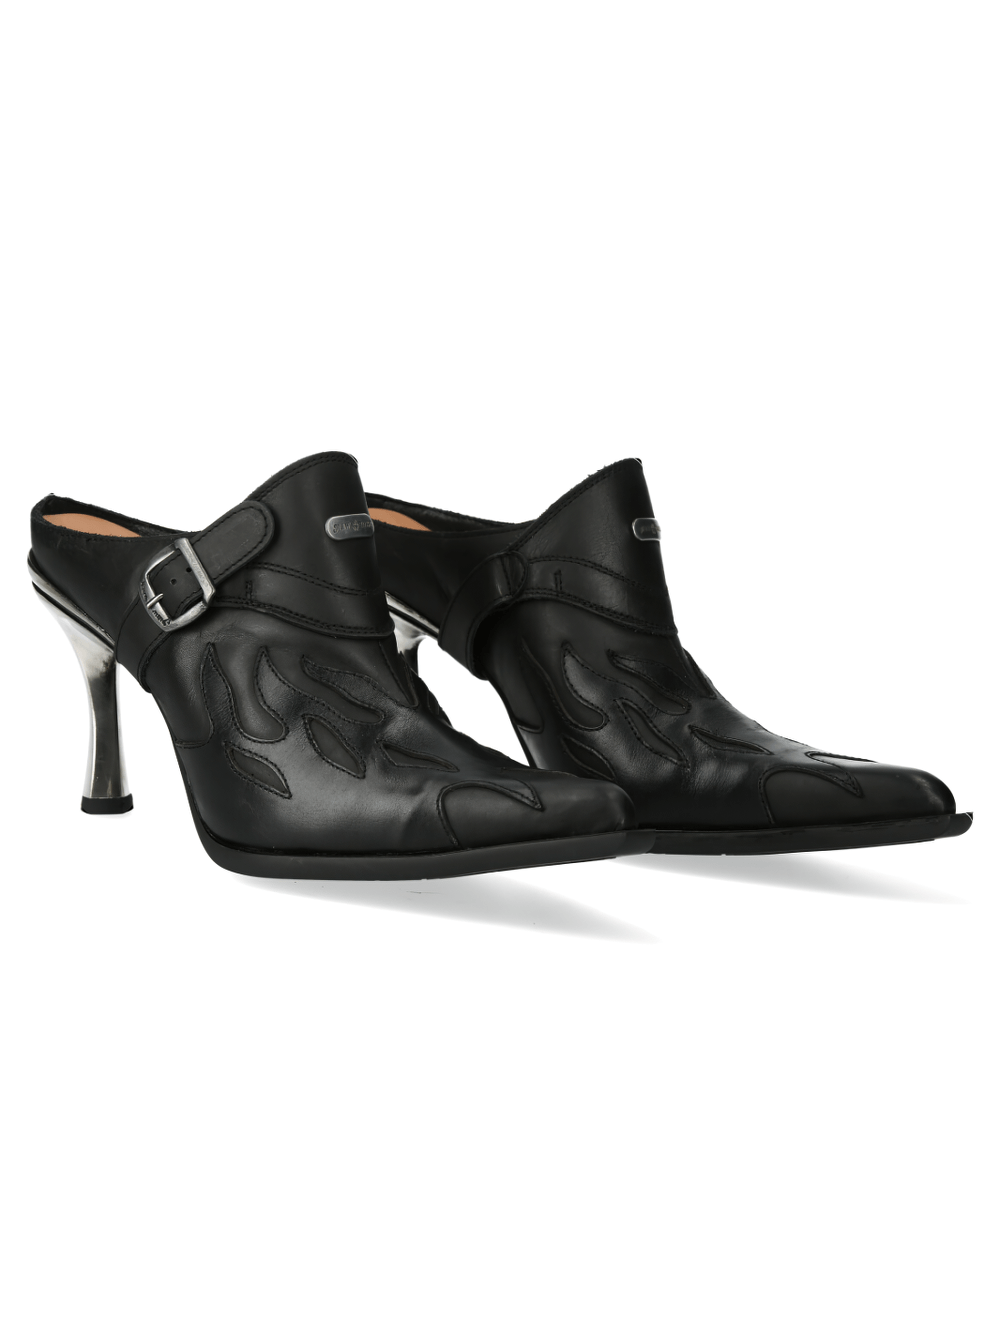 Chaussures à boucle en cuir noir inspirées des flammes NEW ROCK